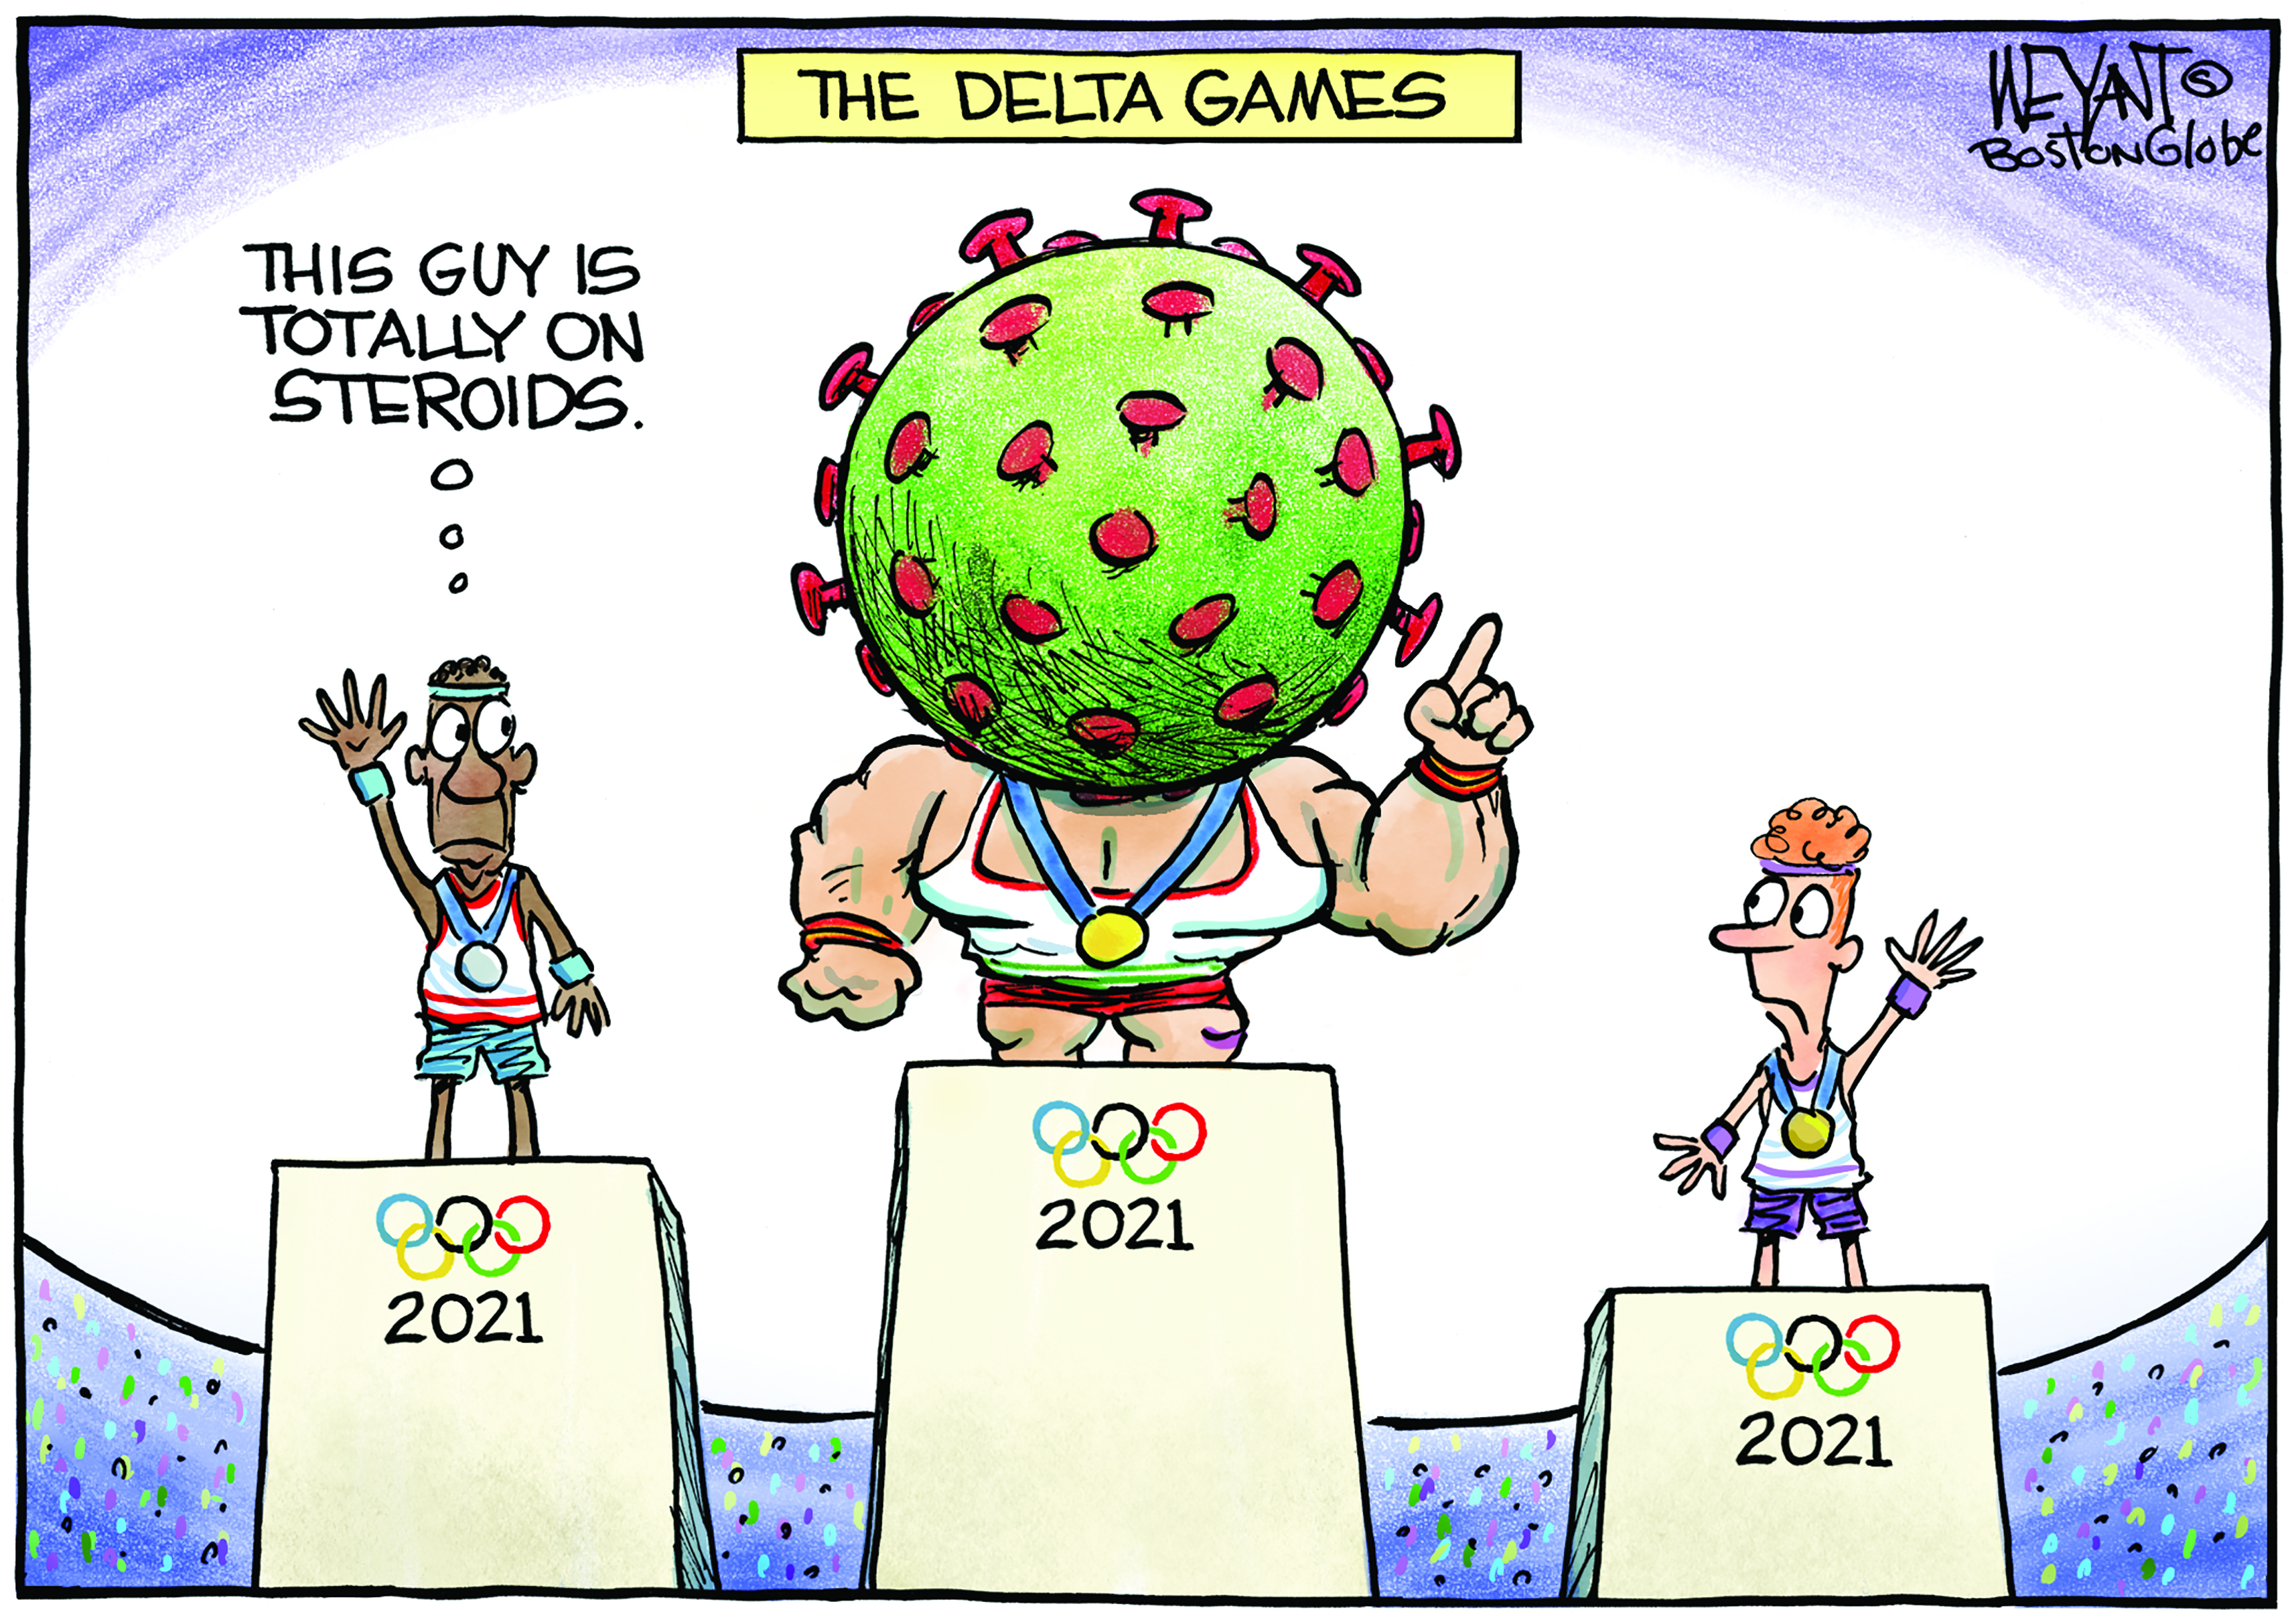 delta games